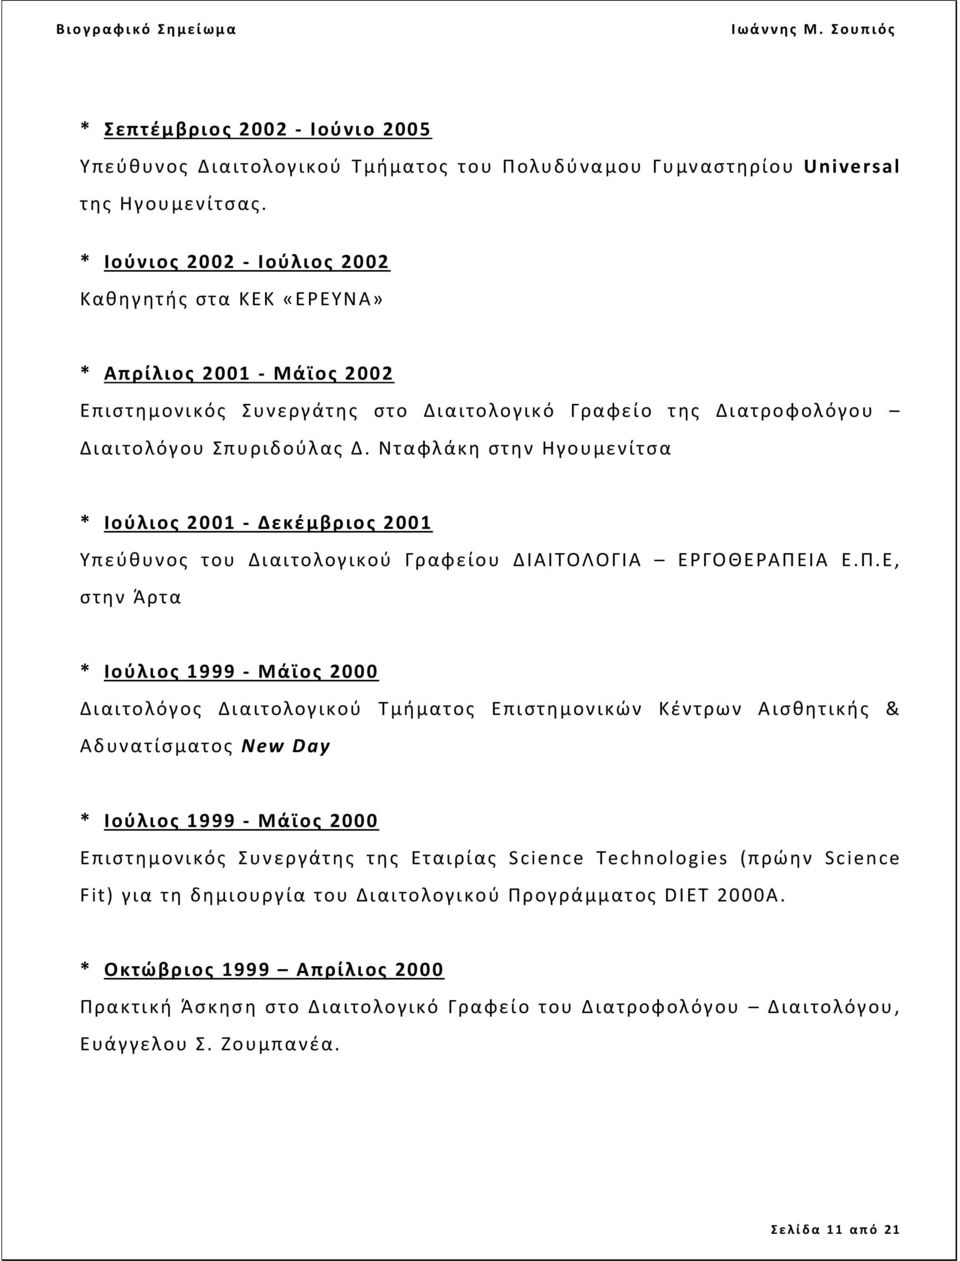 Νταφλάκη στην Ηγουμενίτσα * Ιούλιος 2001 - Δεκέμβριος 2001 Υπεύθυνος του Διαιτολογικού Γραφείου ΔΙΑΙΤΟΛΟΓΙΑ ΕΡΓΟΘΕΡΑΠΕ